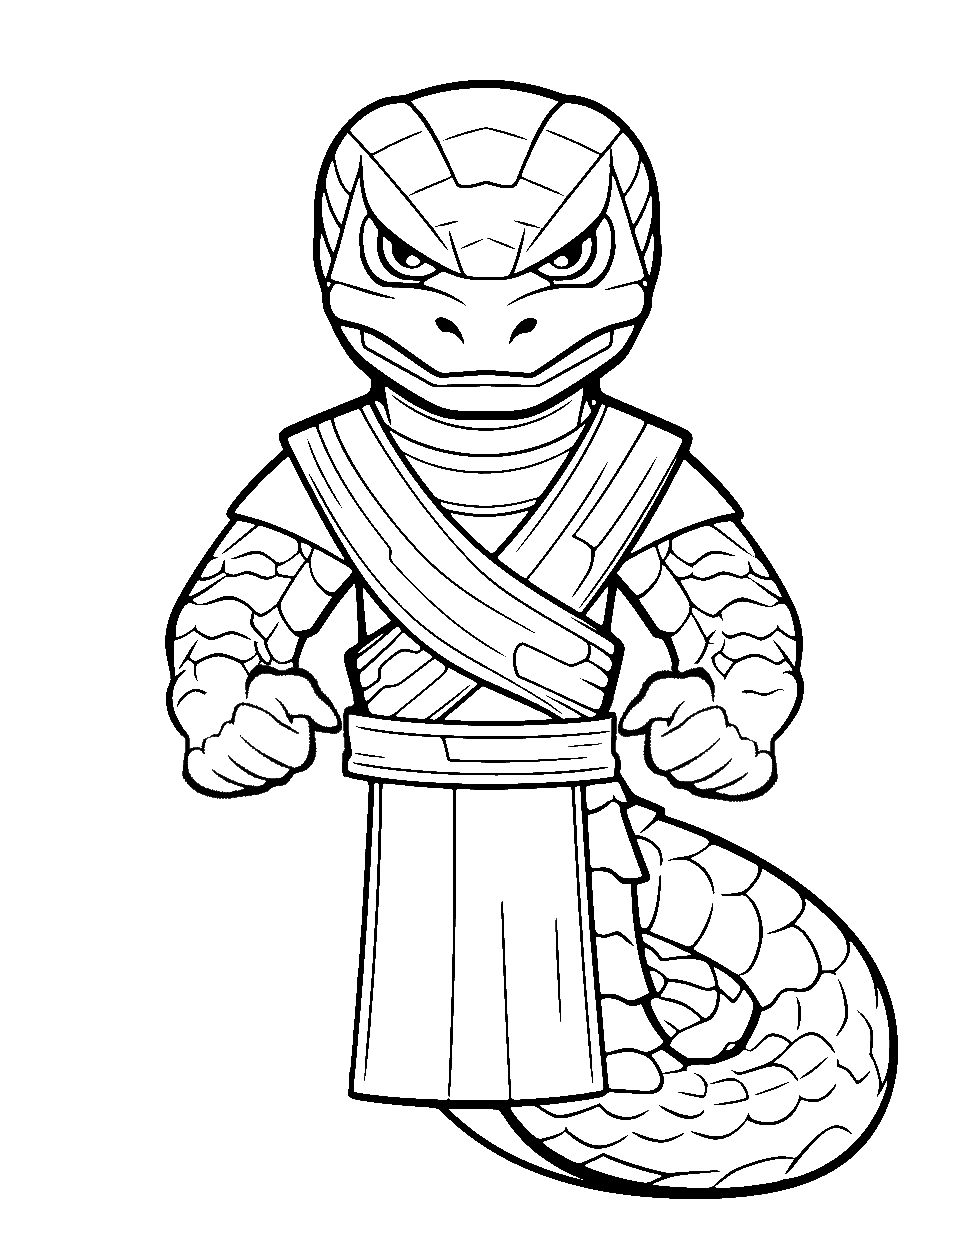 Ninjago Serpentine Coloring Page - A Ninjago-inspired snake character with fierce eyes.